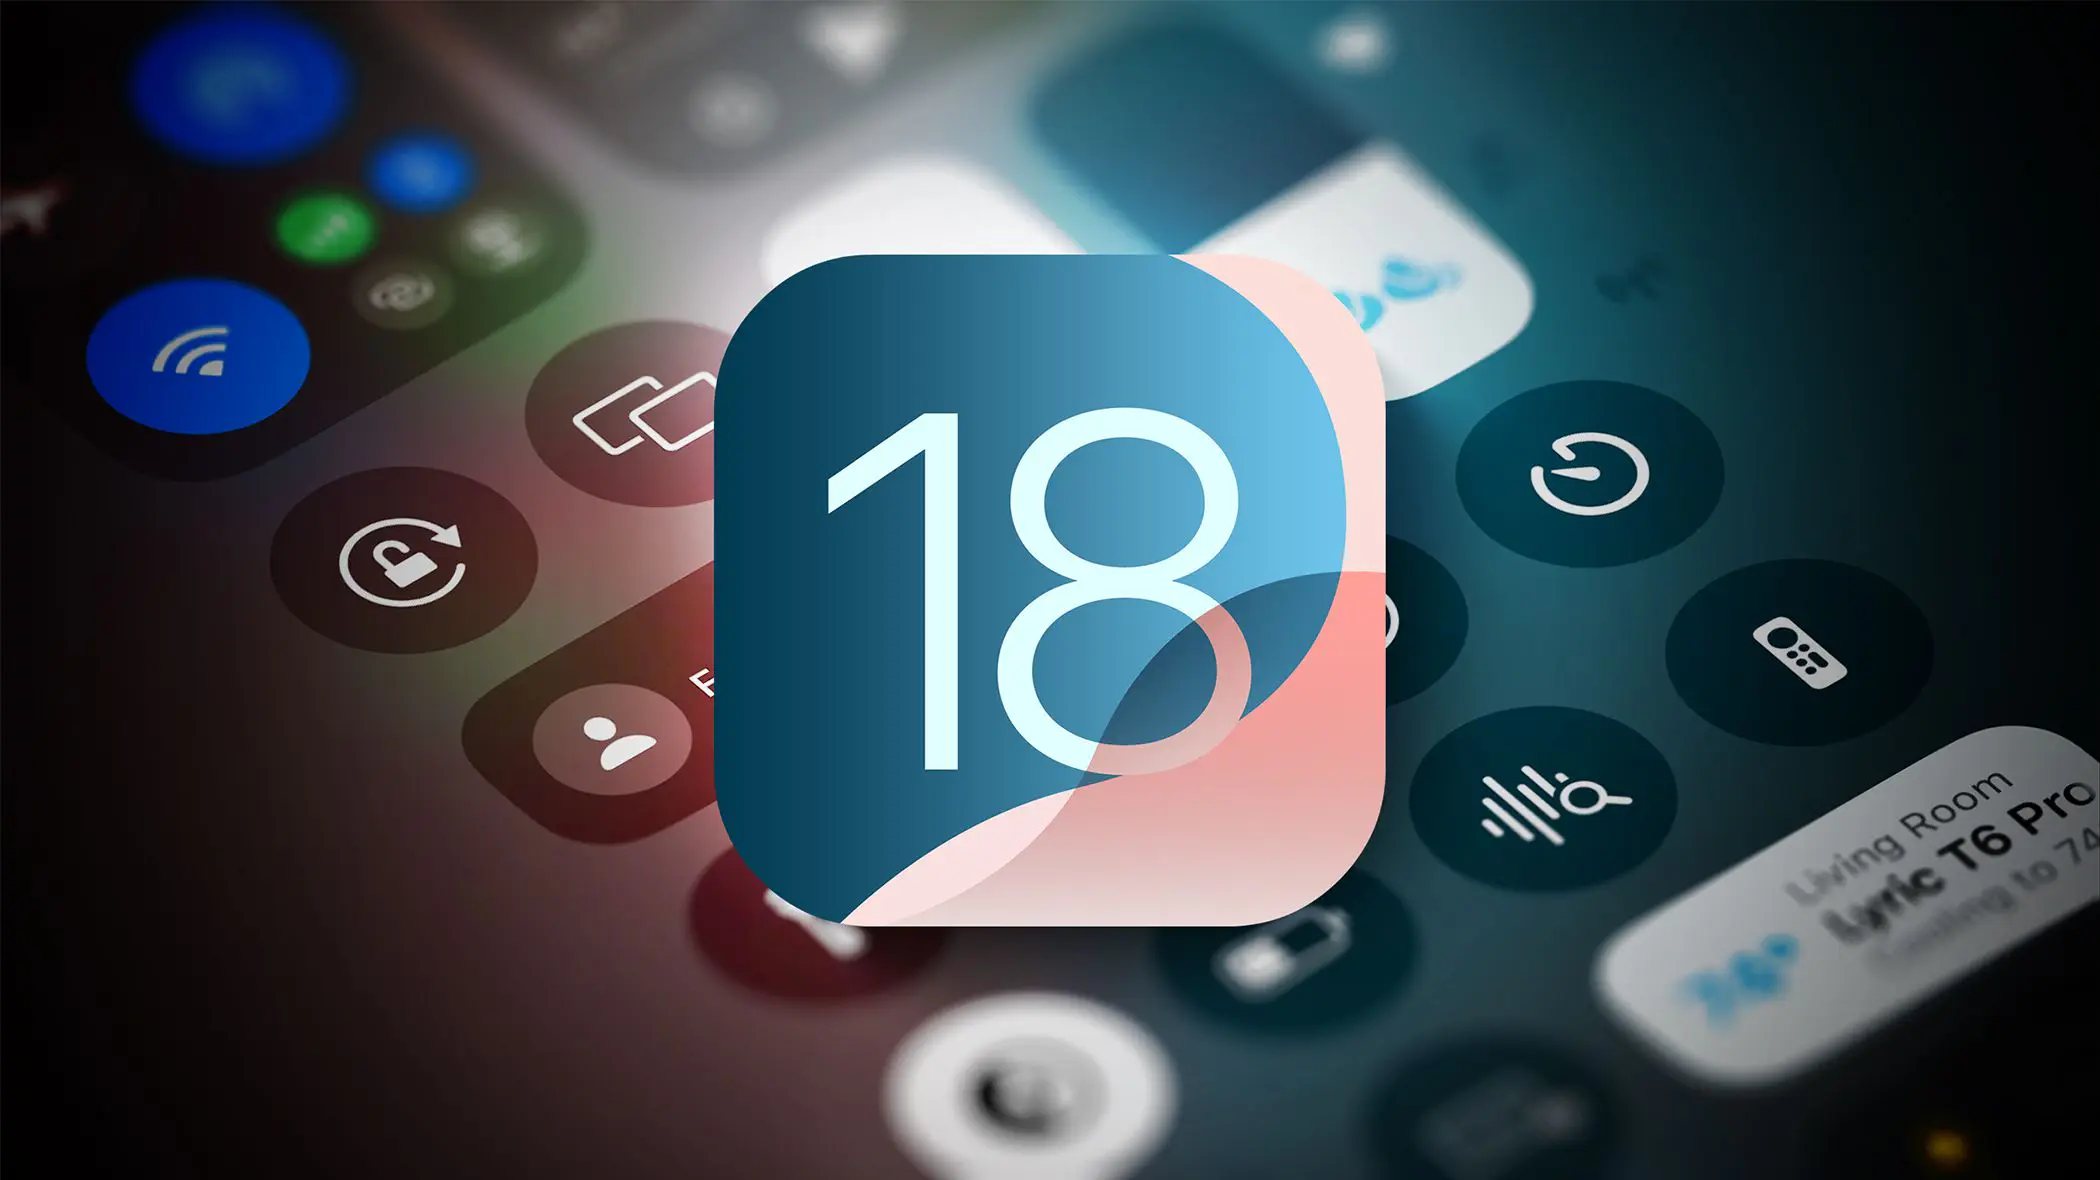 Tổng hợp các thay đổi trong Control Center trên iOS 18